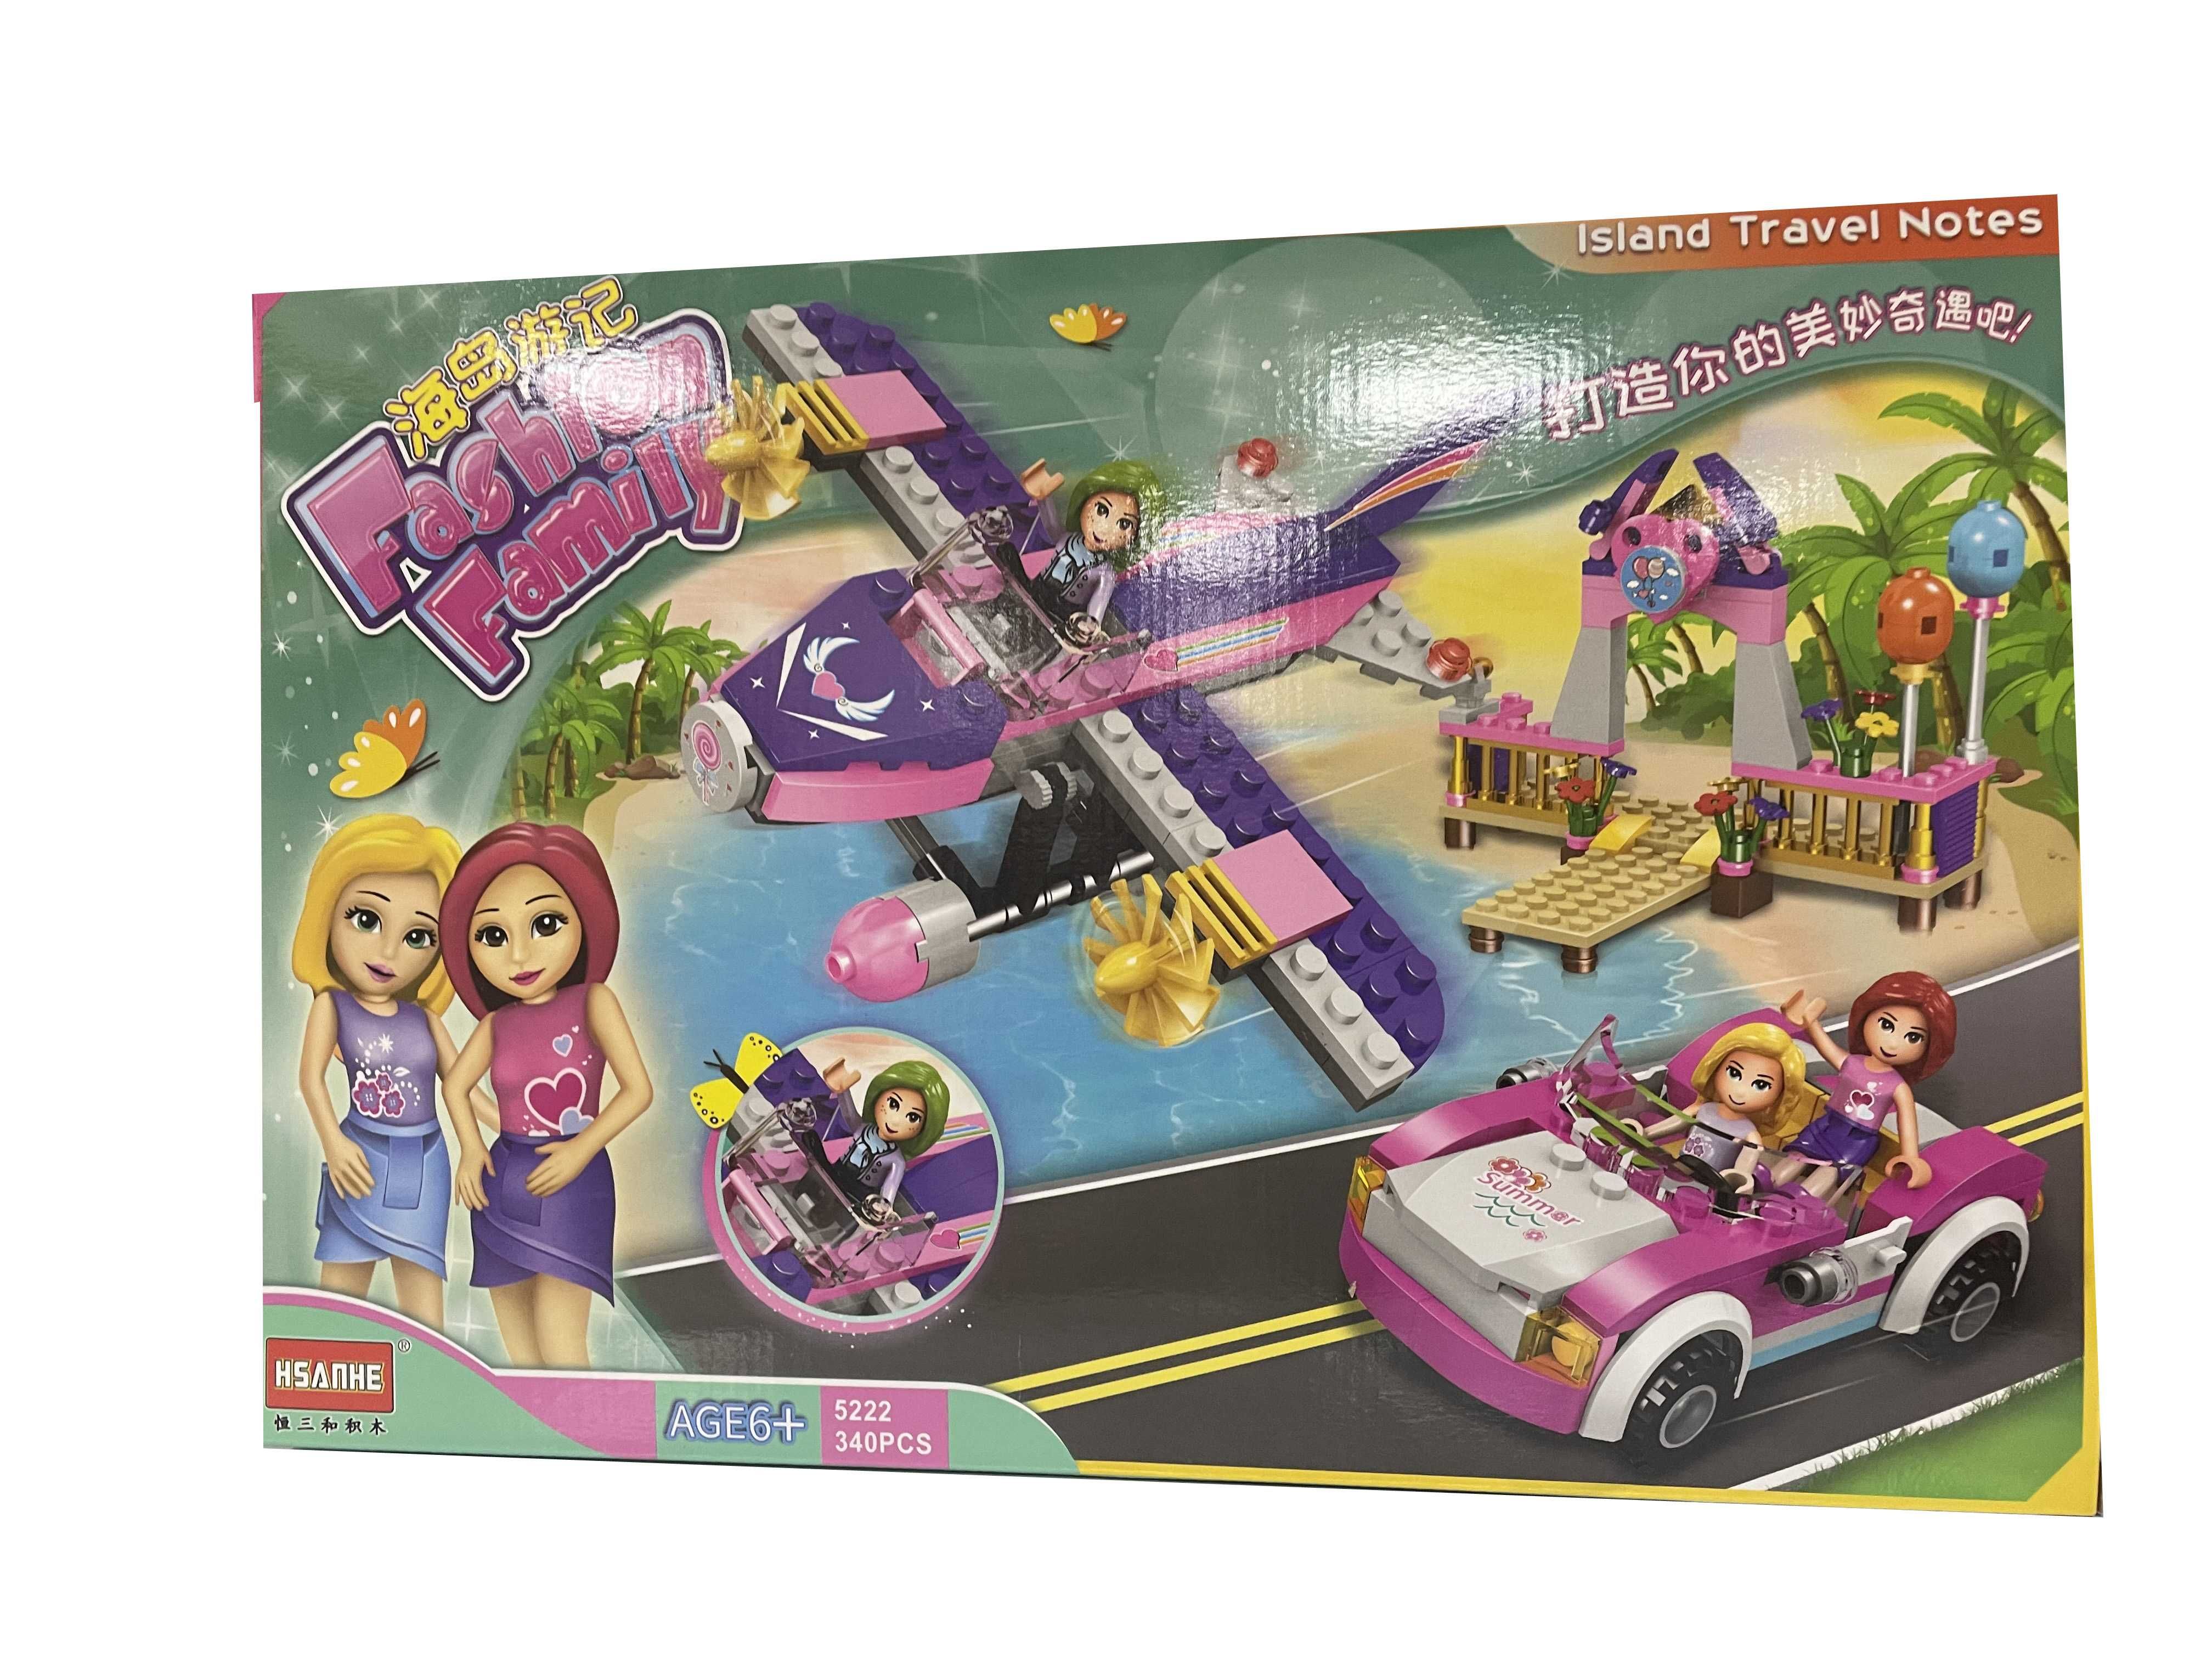 Klocki Daleka podróż różowy smochód + samolot jak Lego z Polski